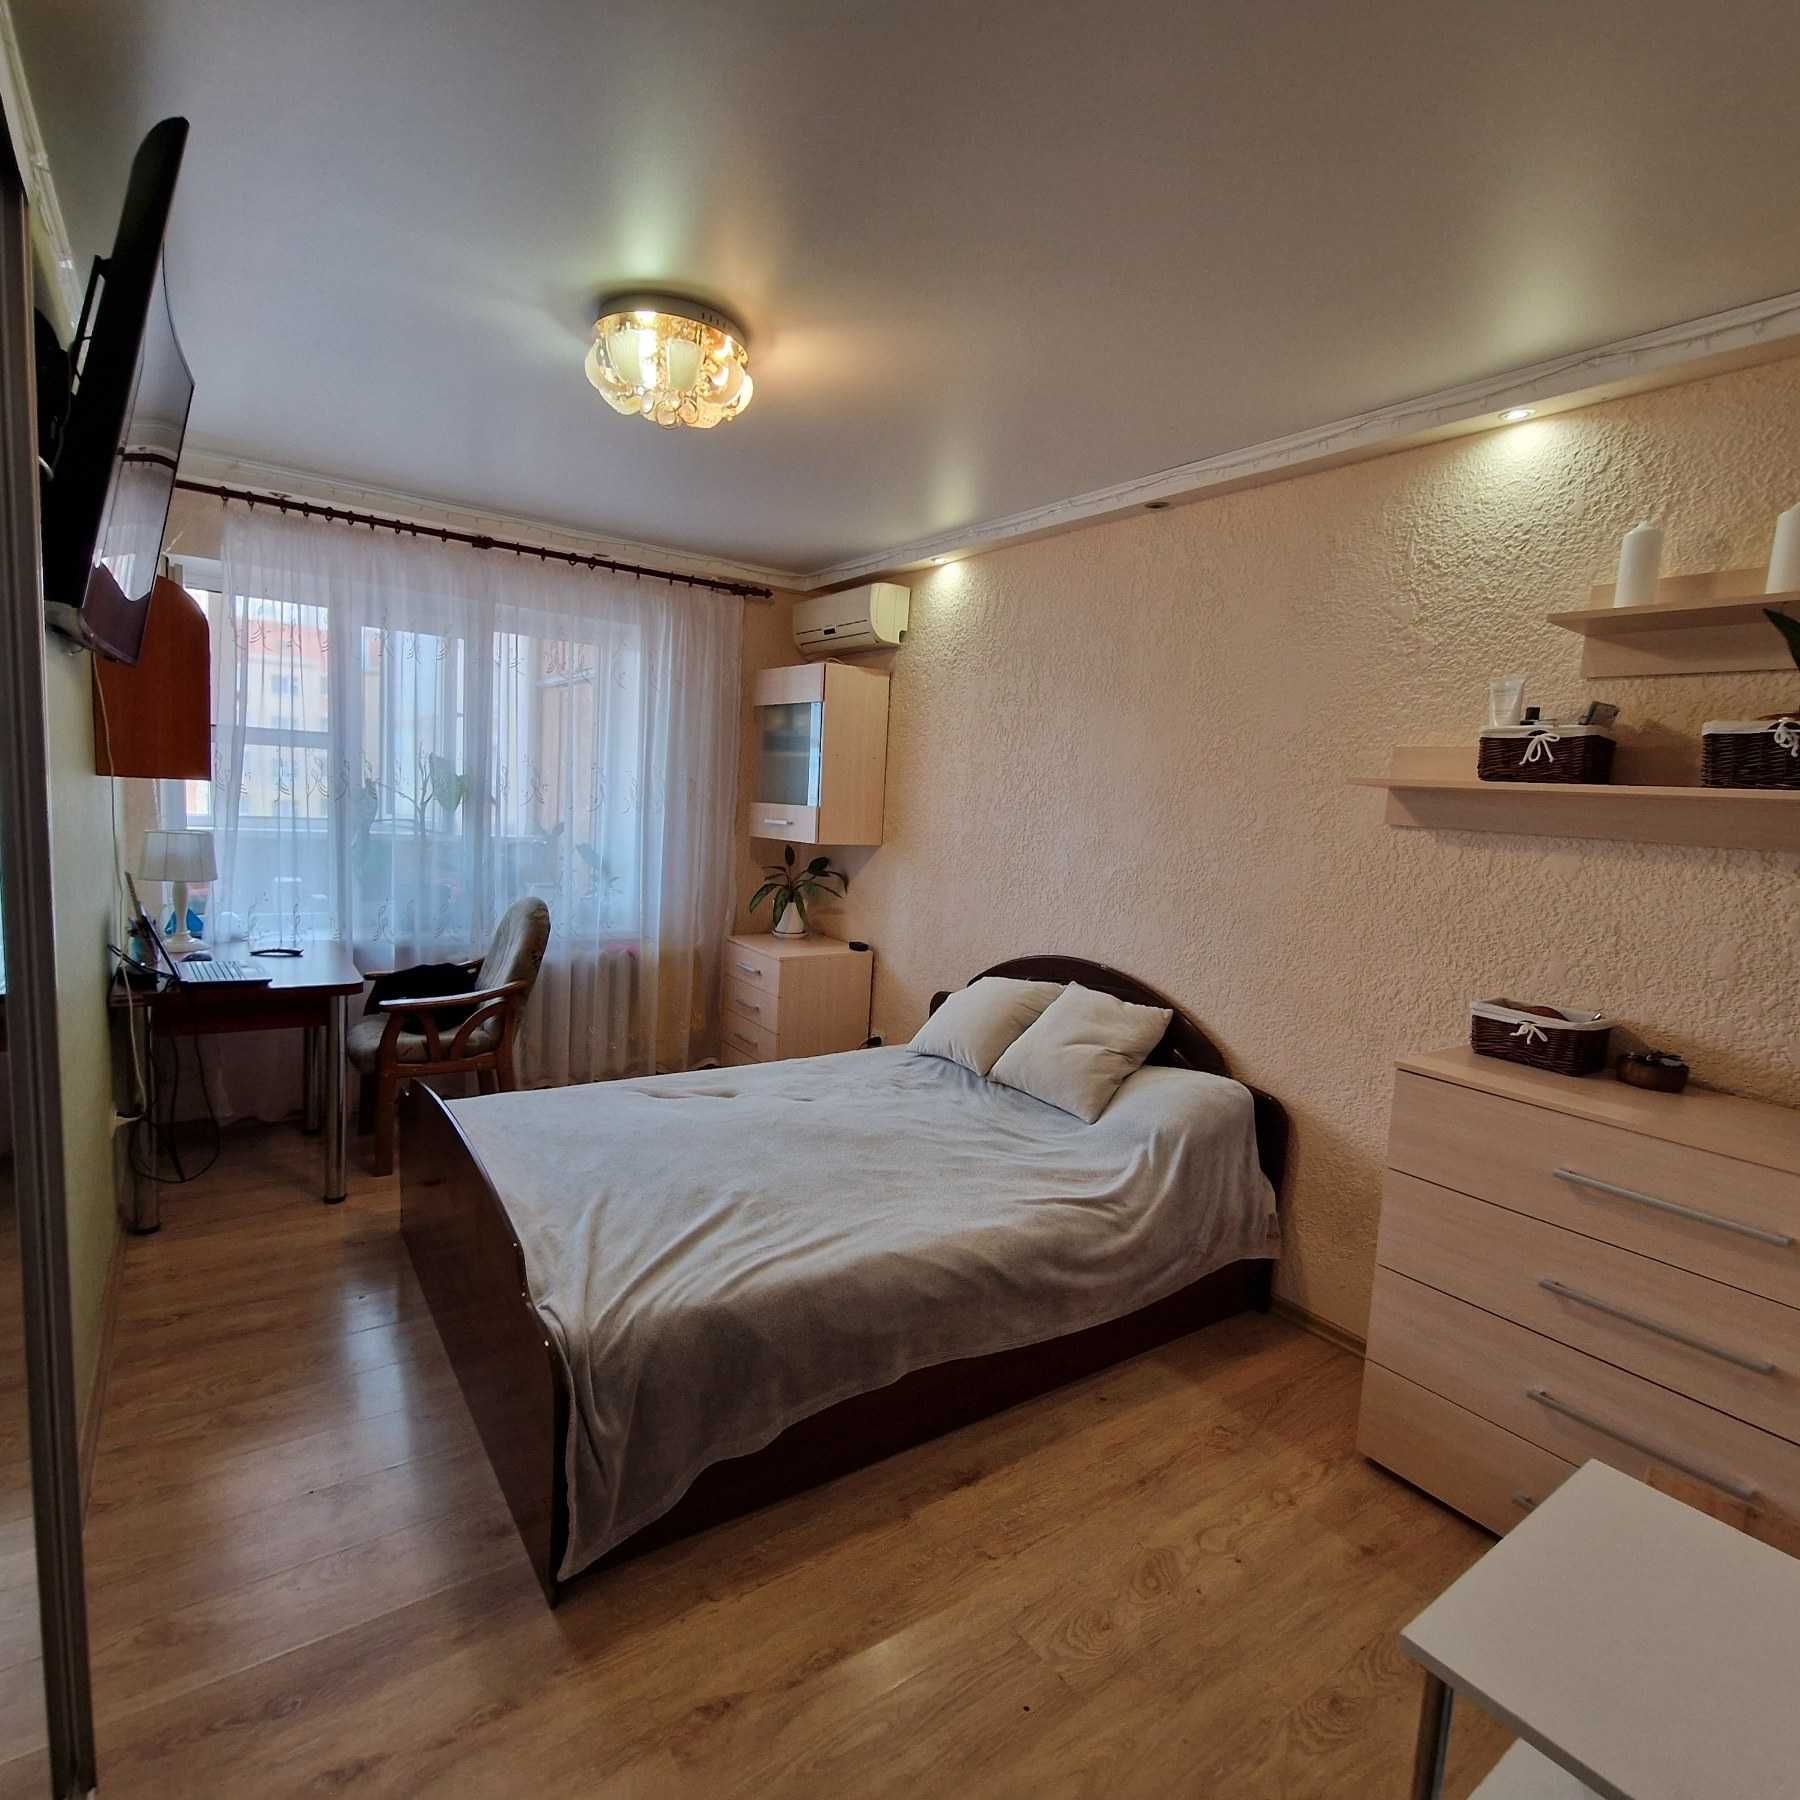 Квартира На Сахарова 2 комнаты